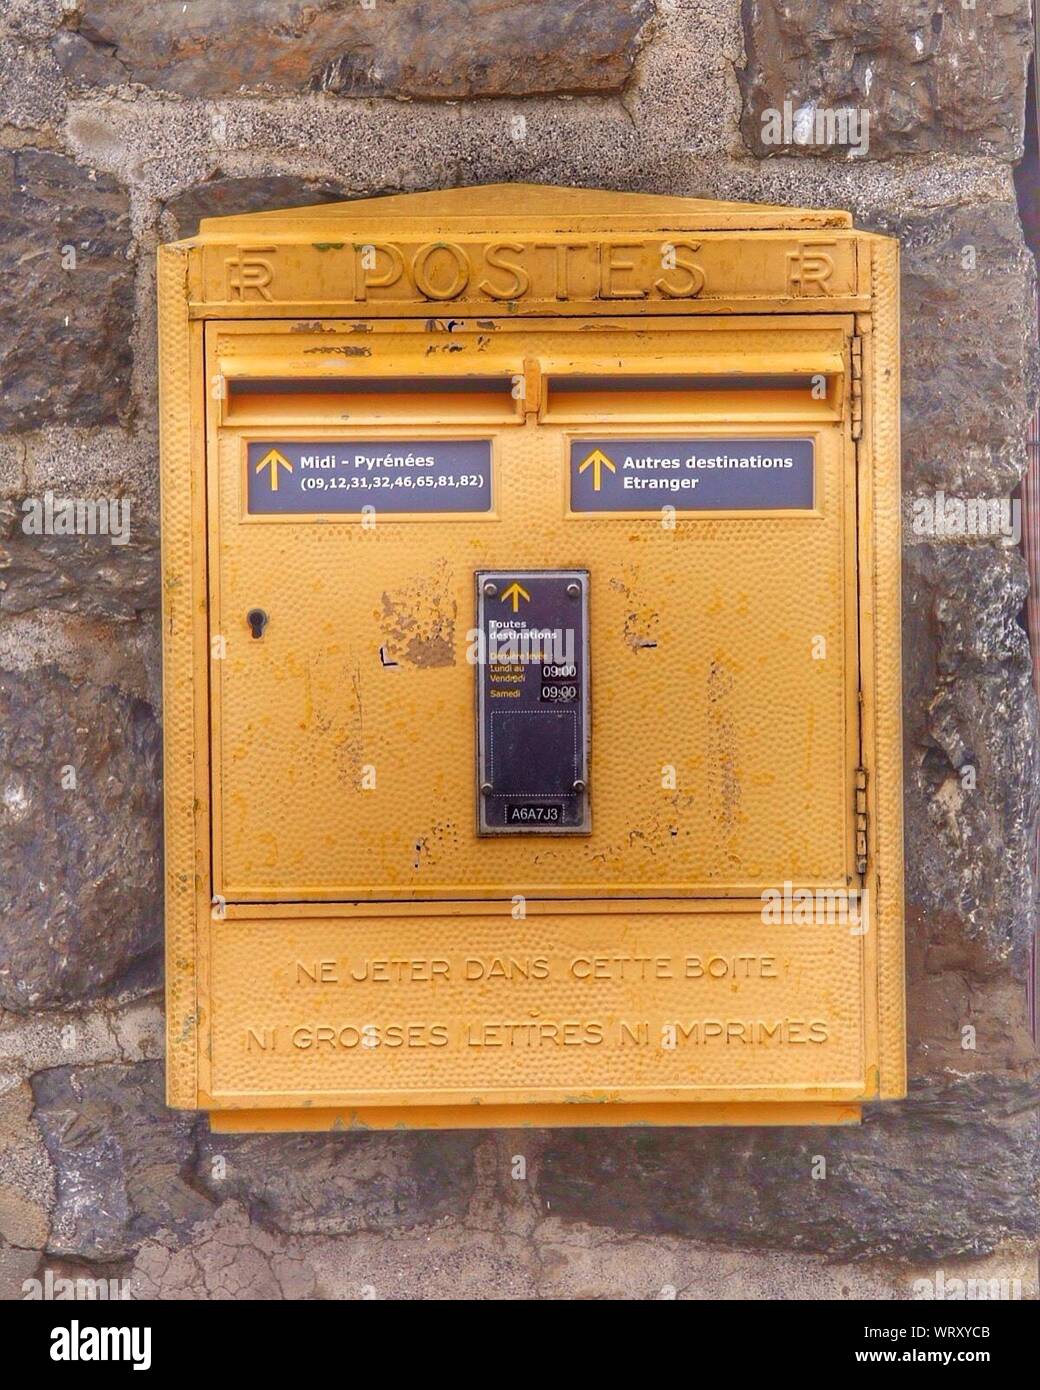 Briefkasten auf Stein Wand Stockfotografie - Alamy